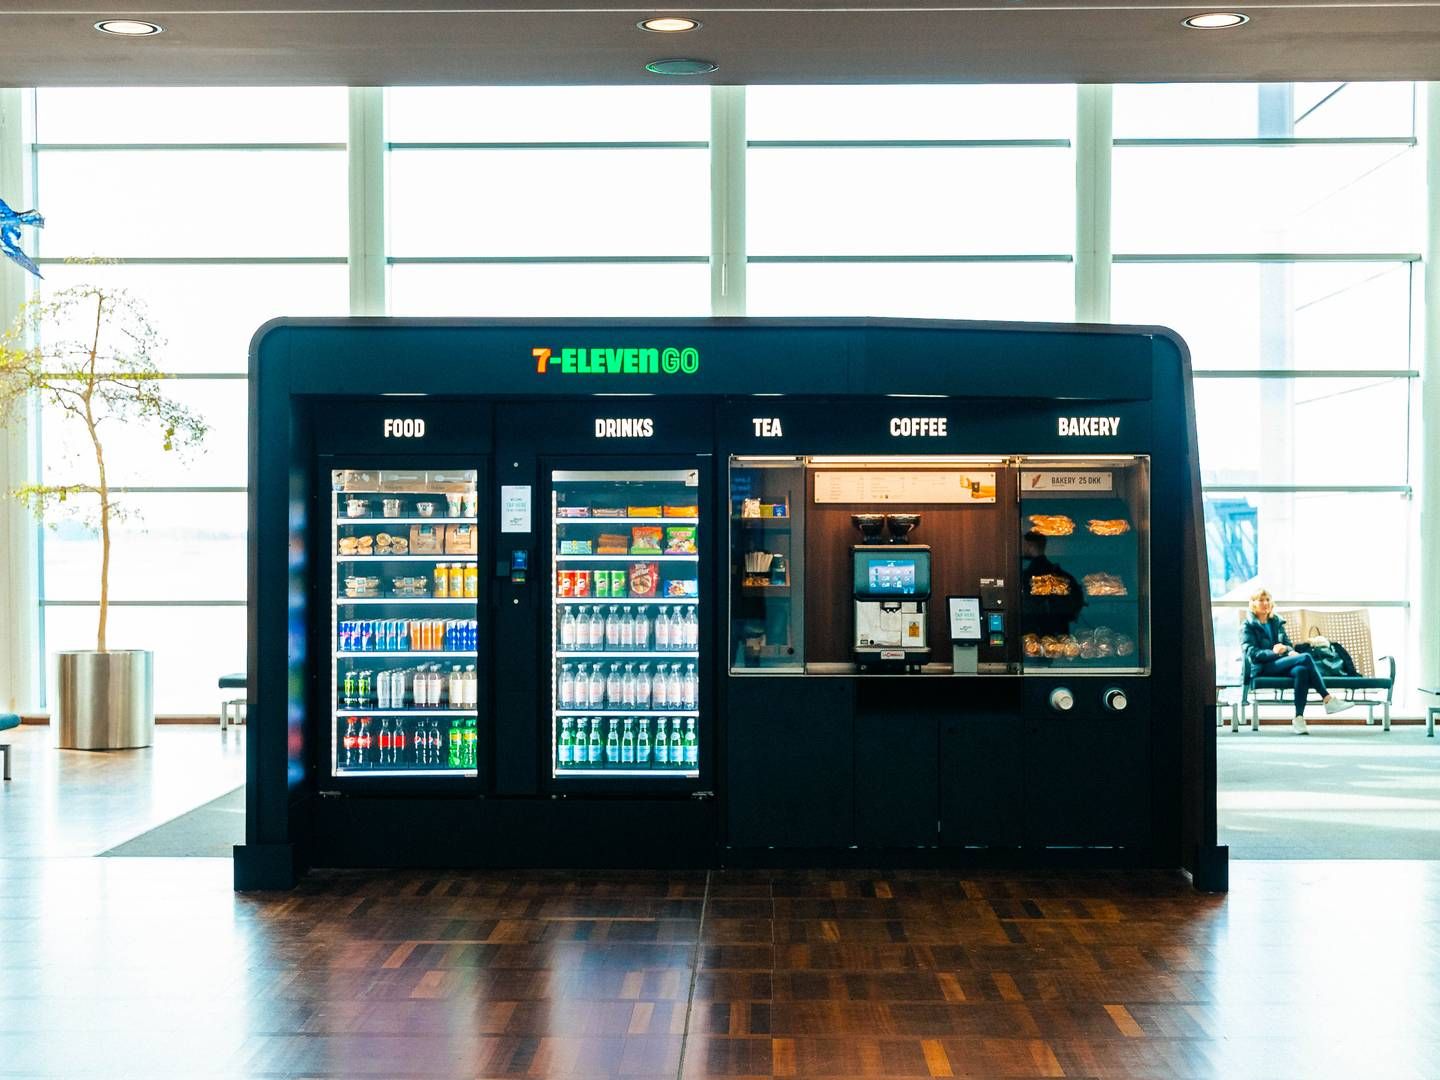 7-Eleven råder over 89 selvbetjeningsautomater i Københavns Lufthavn, der eksempelvis tilbyder nakkepuder til flyveturen, sandwiches, wraps og kaffe i en tredjedel af automaterne. | Photo: 7-eleven / Pr